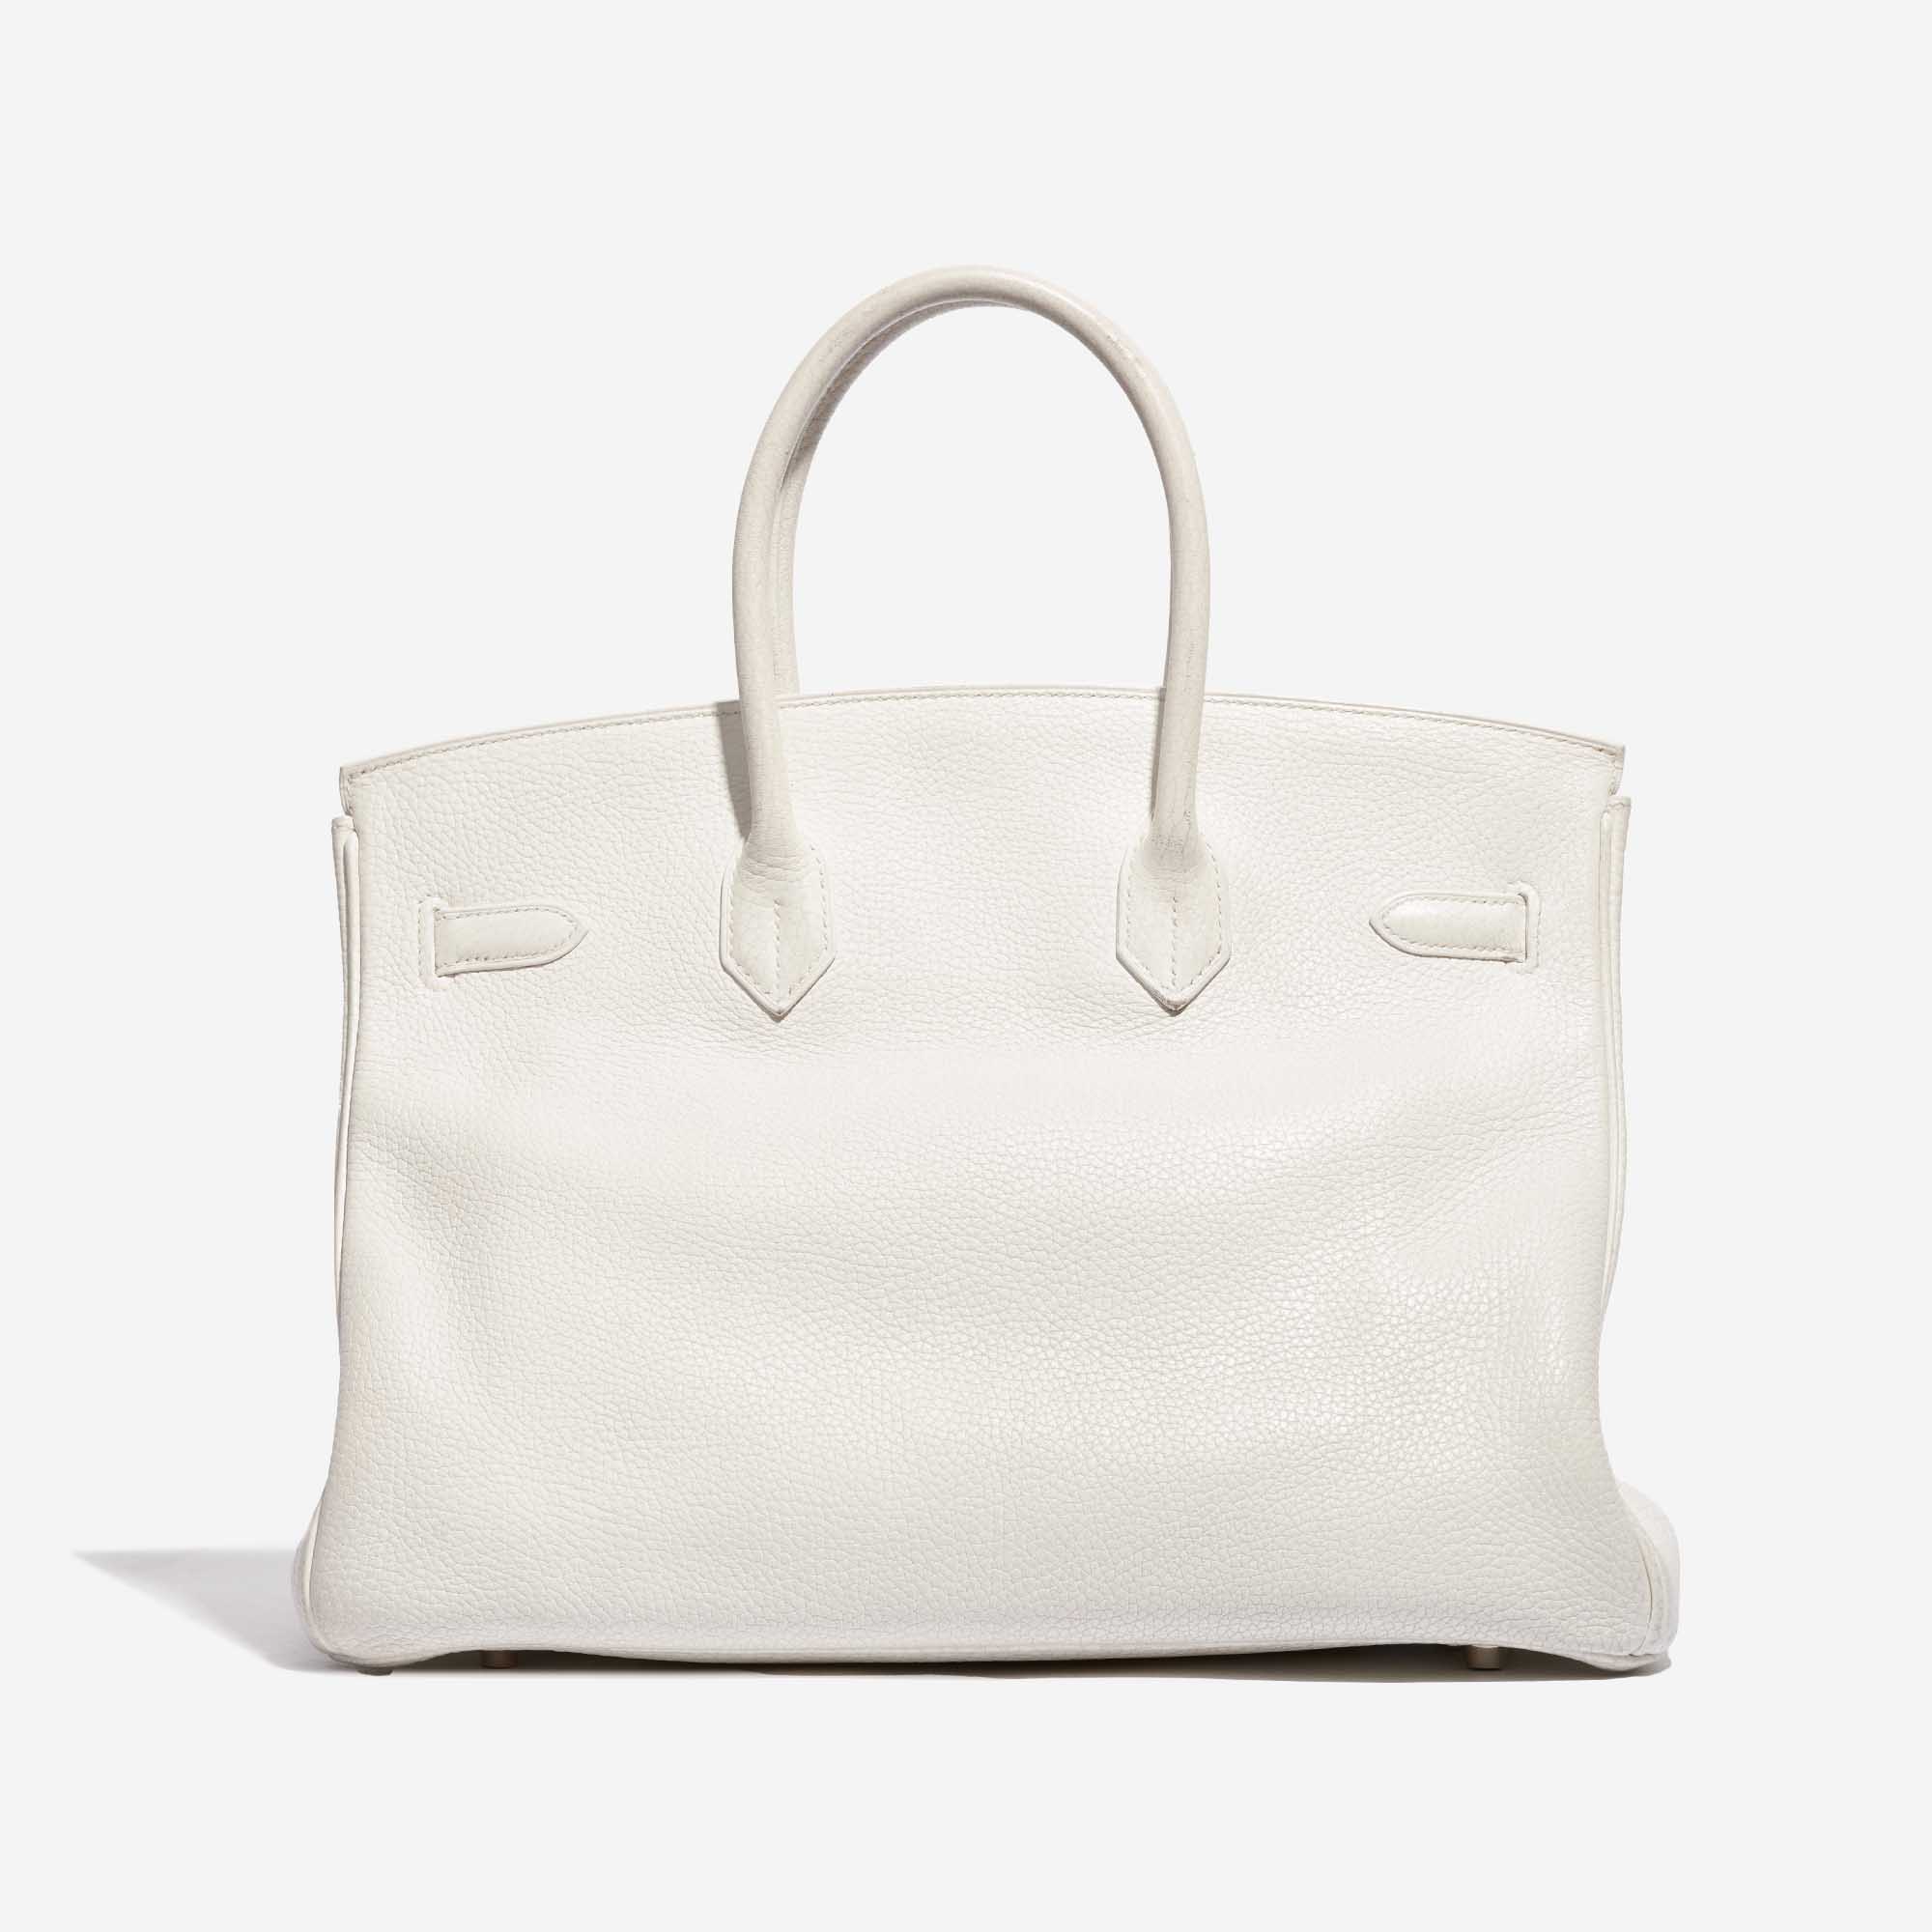 Pre-owned Hermès bag Birkin 35 Clemence White White Back | Verkaufen Sie Ihre Designer-Tasche auf Saclab.com